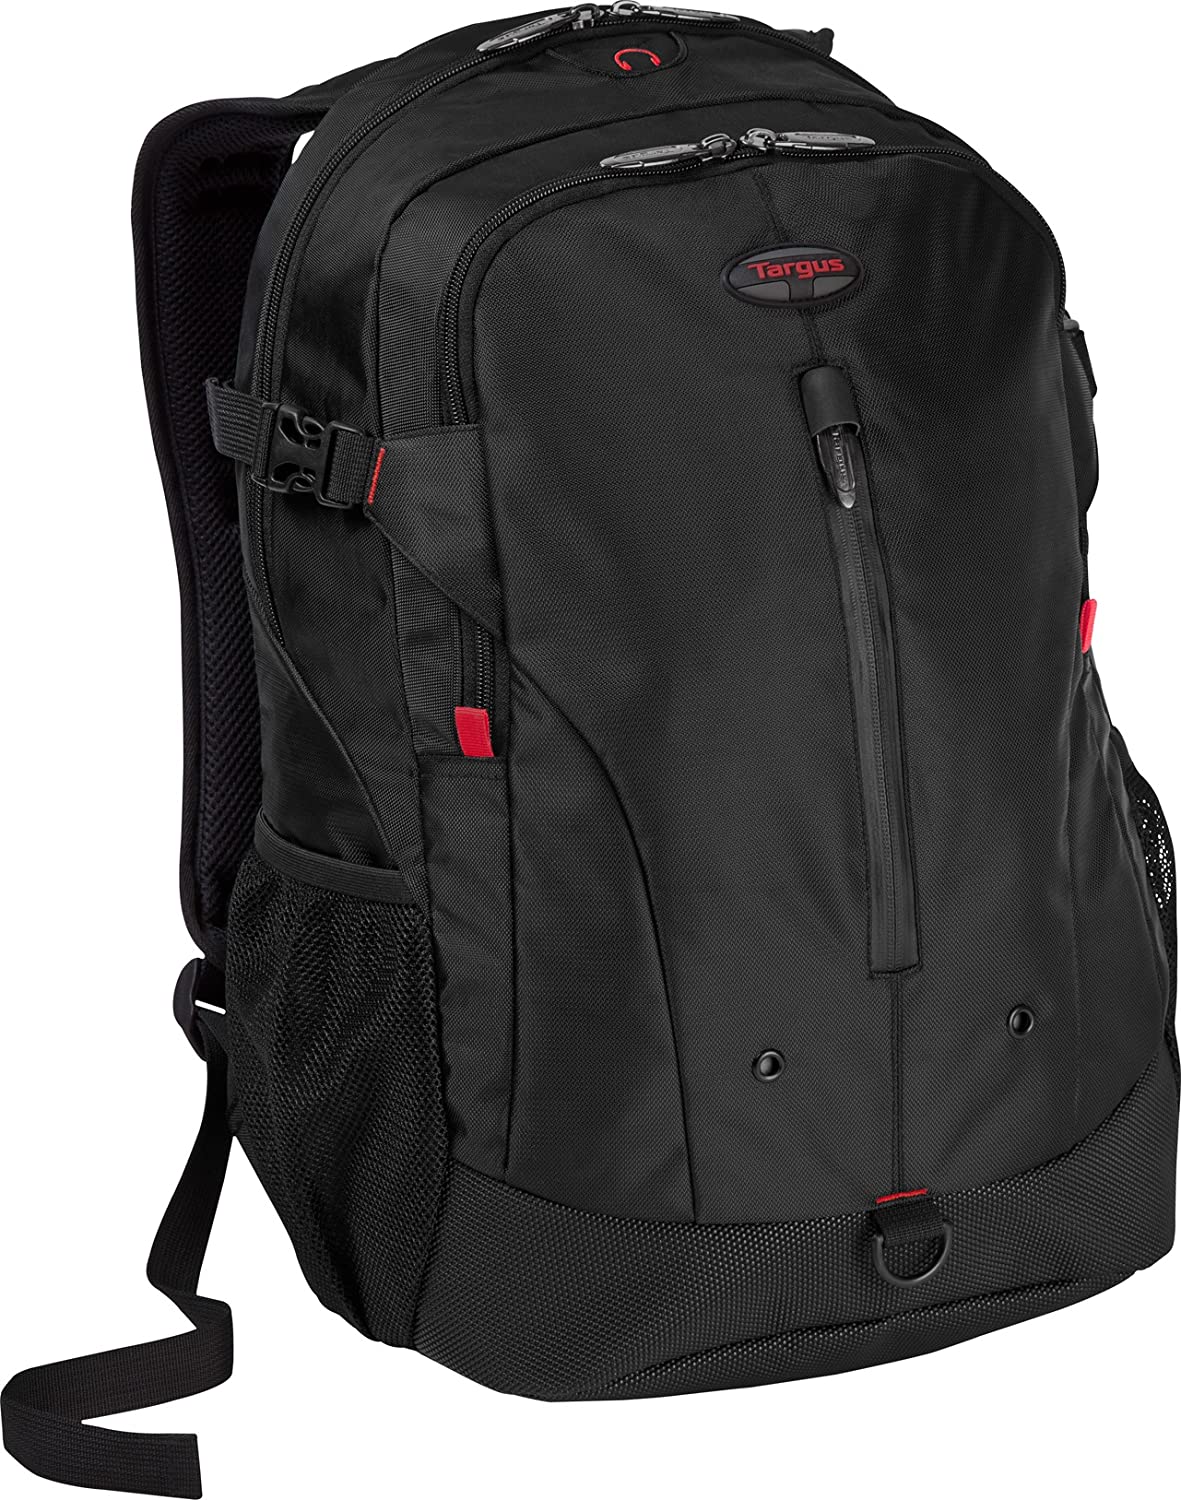 Targus Backpack For Laptop & Travel